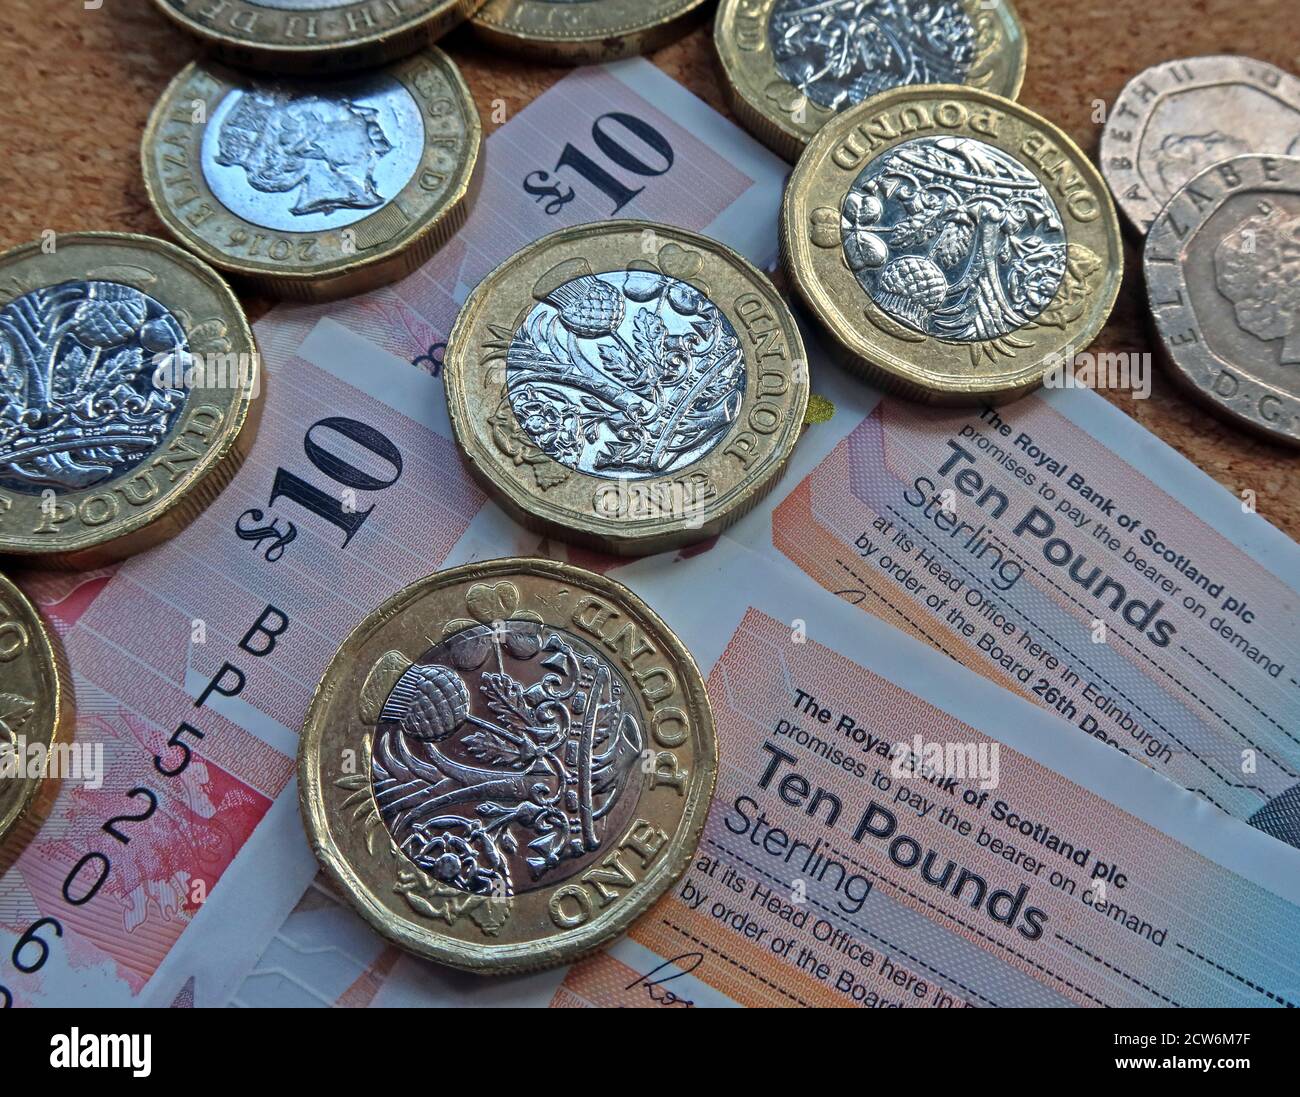 The Royal Bank of Scotland PLC, Ten Pound note, avec des pièces en livres, la devise en livres sterling écossaise, des billets en plastique Banque D'Images